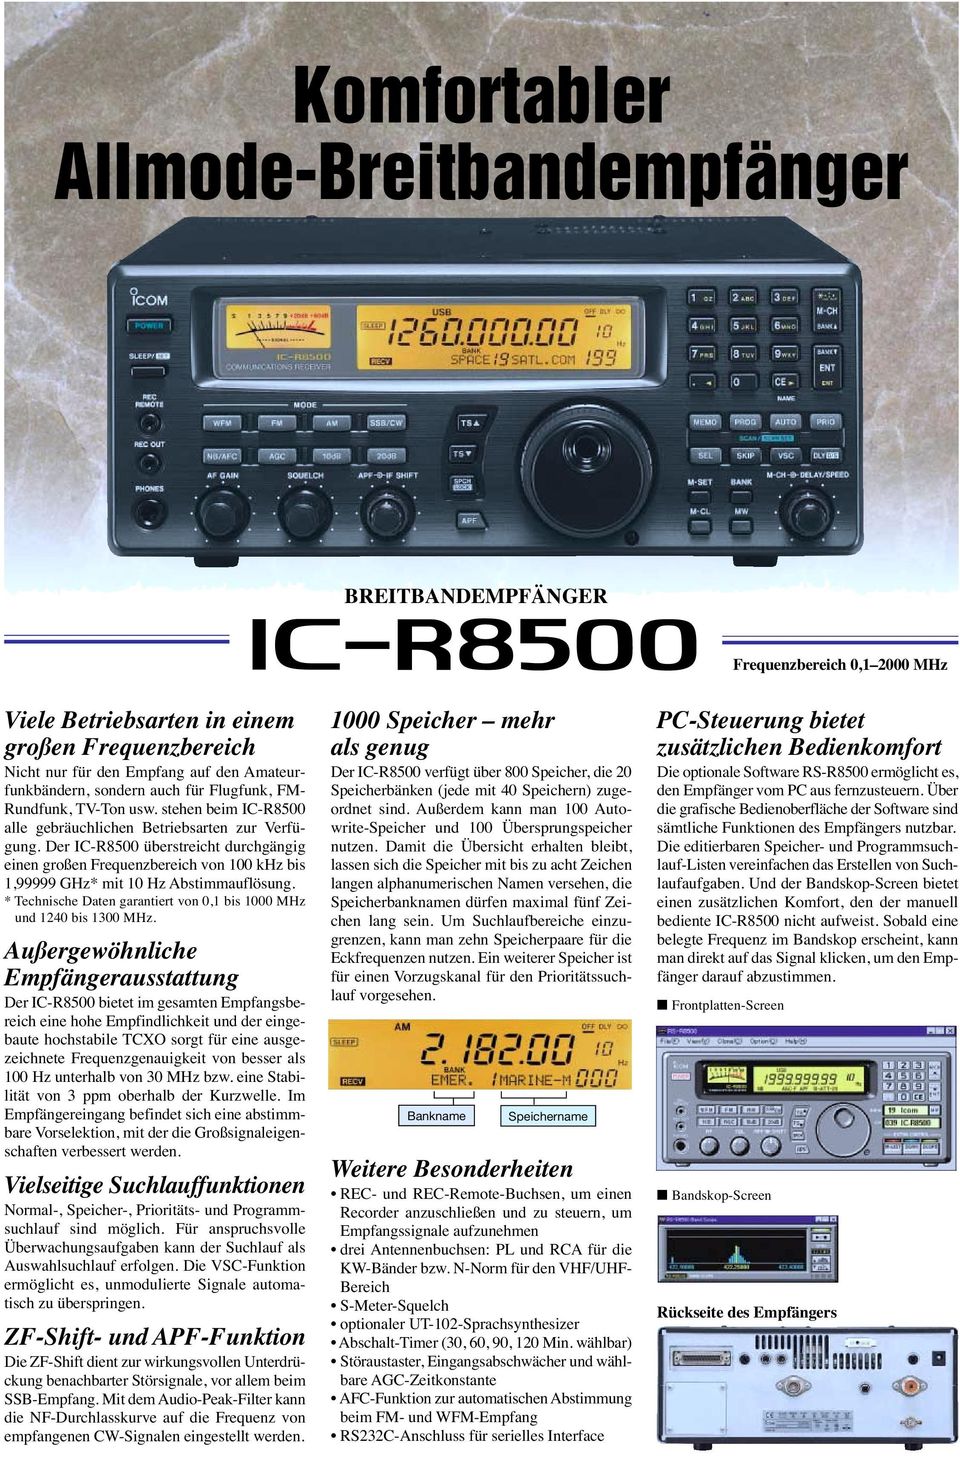 Der IC-R8500 überstreicht durchgängig einen großen Frequenzbereich von 100 khz bis 1,99999 GHz* mit 10 Hz Abstimmauflösung. * Technische Daten garantiert von 0,1 bis 1000 MHz und 1240 bis 1300 MHz.